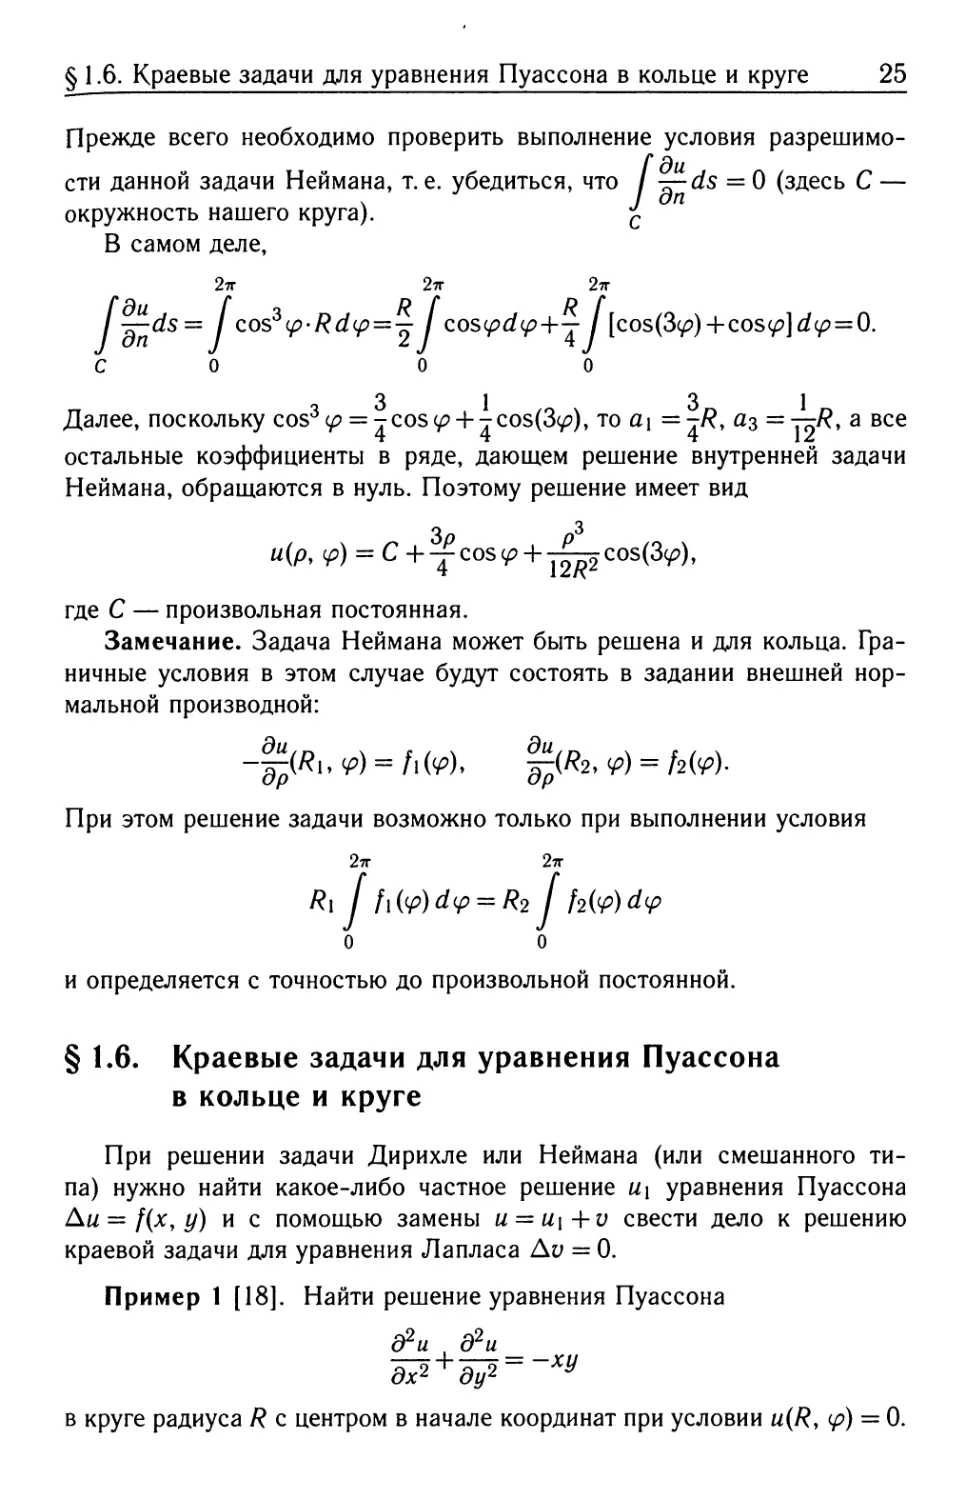 § 1.6. Краевые задачи для уравнения Пуассона в кольце и круге